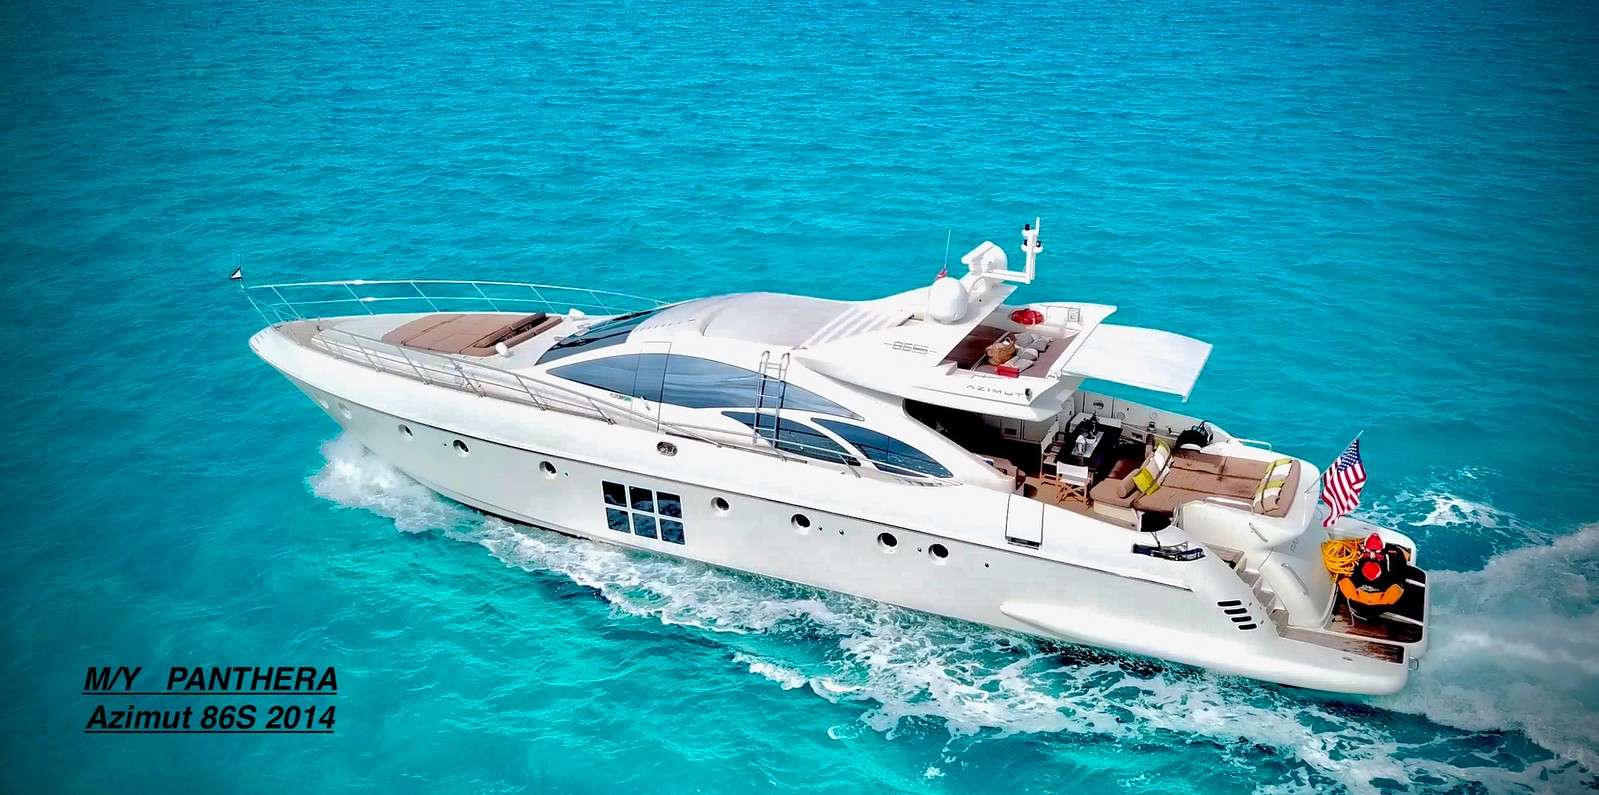 Panthera Yacht Charter - Ritzy Charters